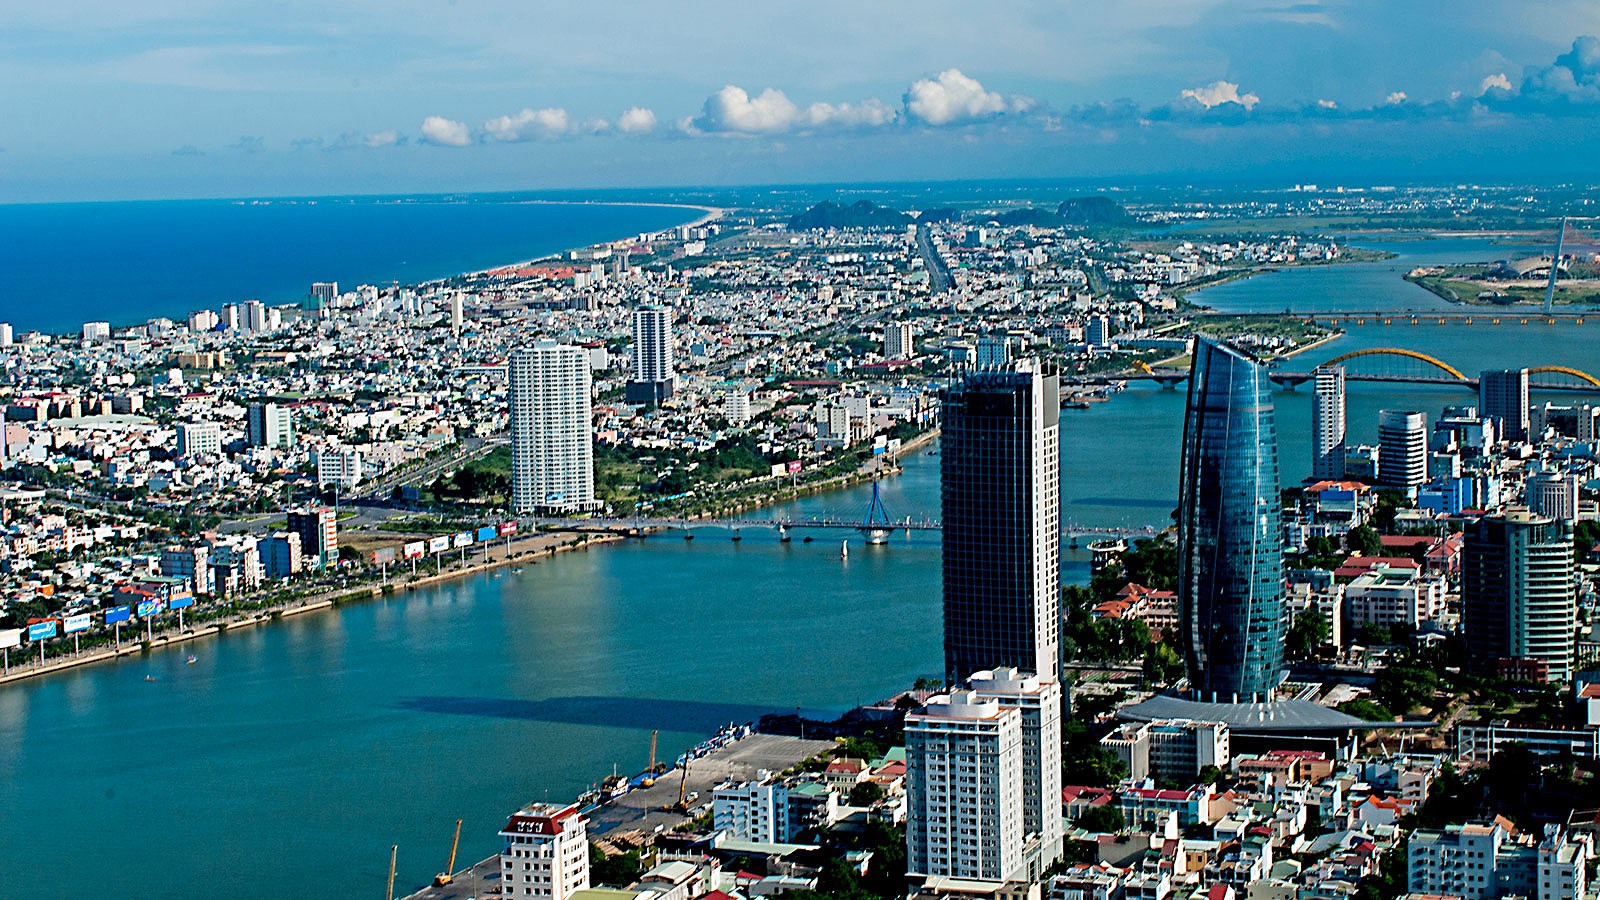 HĐND TP. Đà Nẵng vừa thông qua hàng loạt các công trình, dự án đầu tư mới và thu hồi.